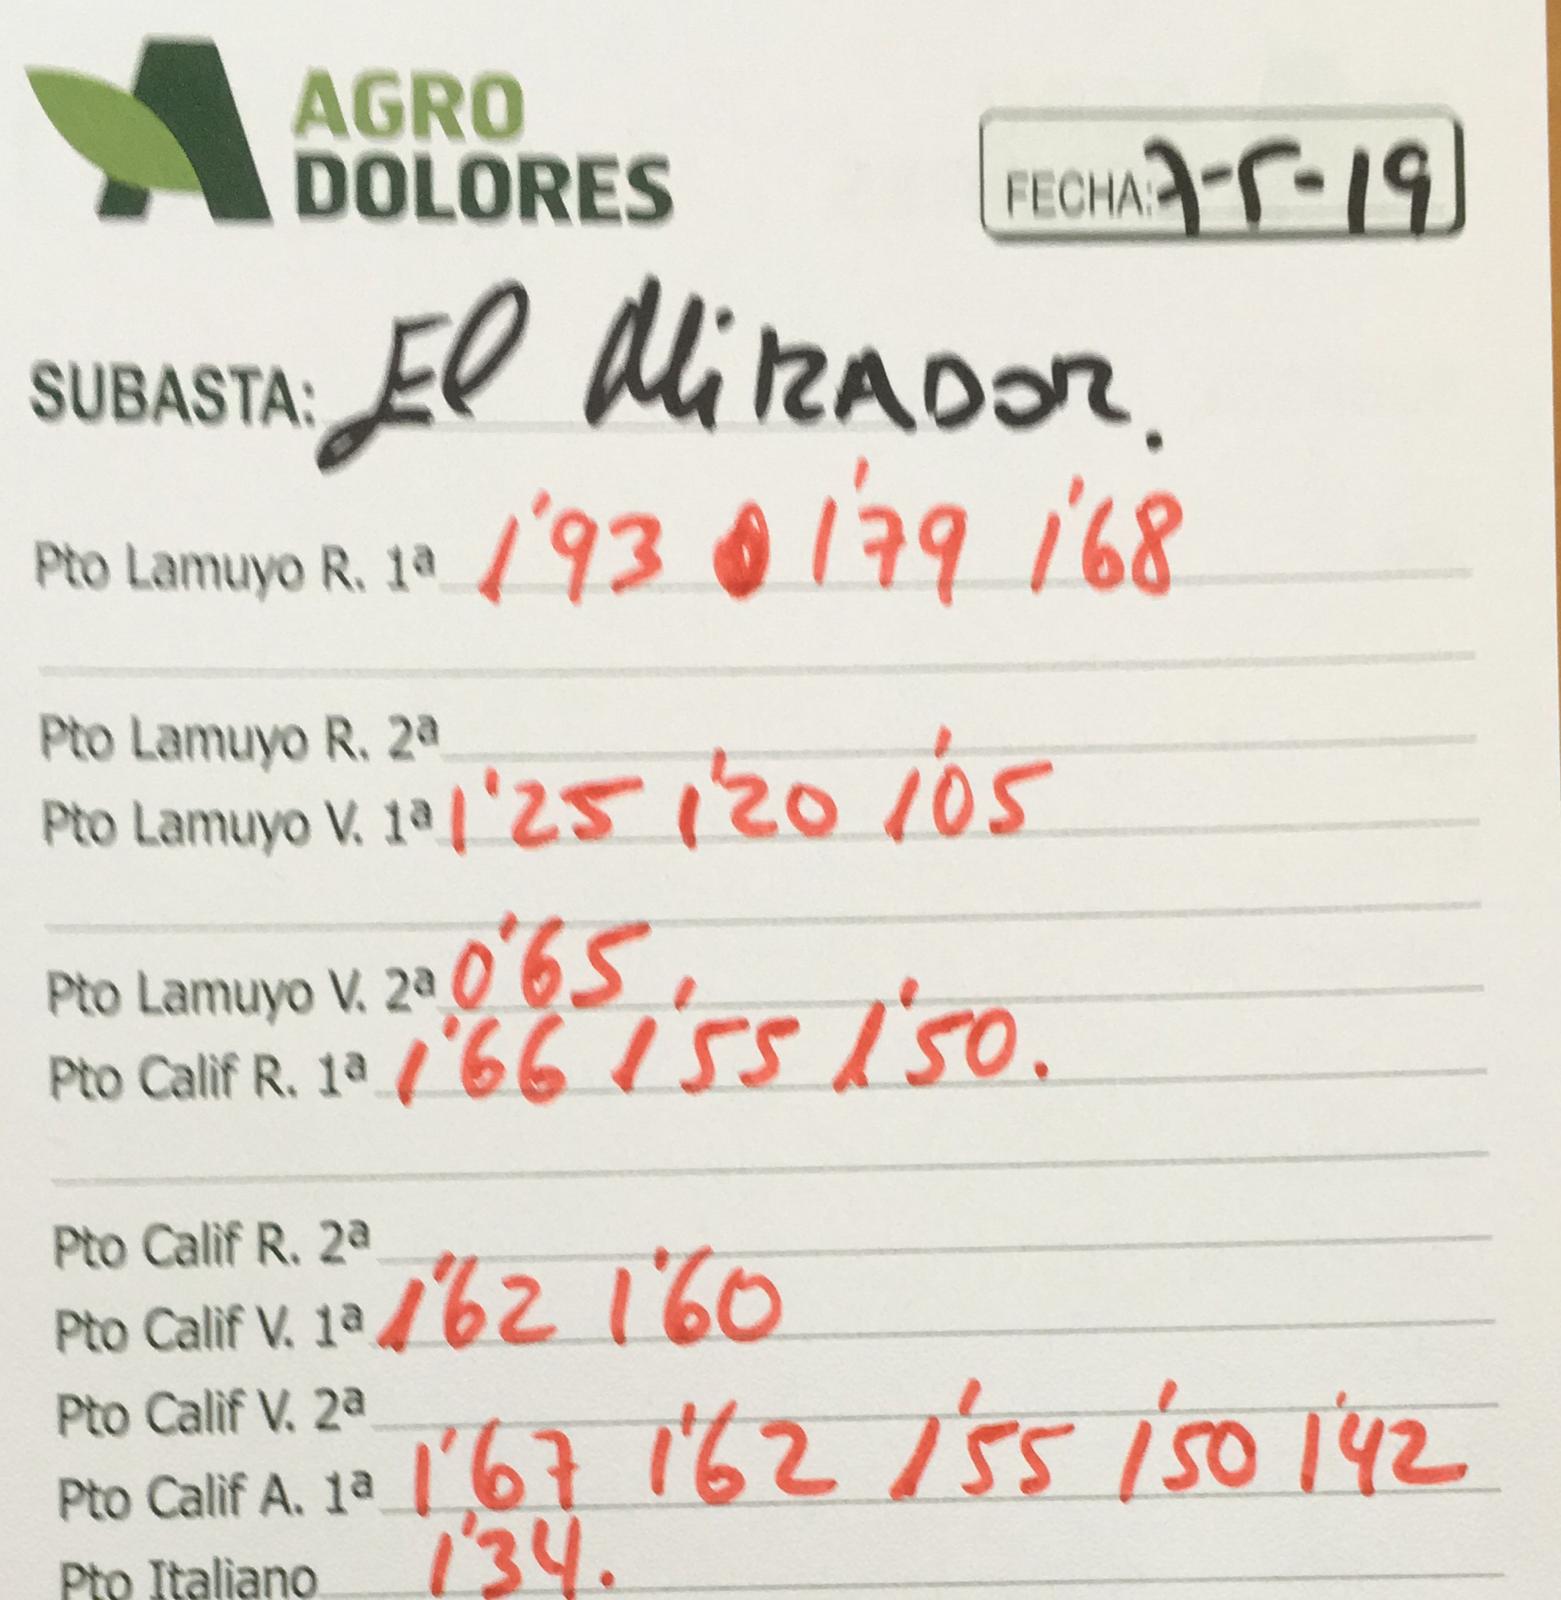 Subasta hortofrutícola Agrodolores El Mirador 7 de Mayo 2019